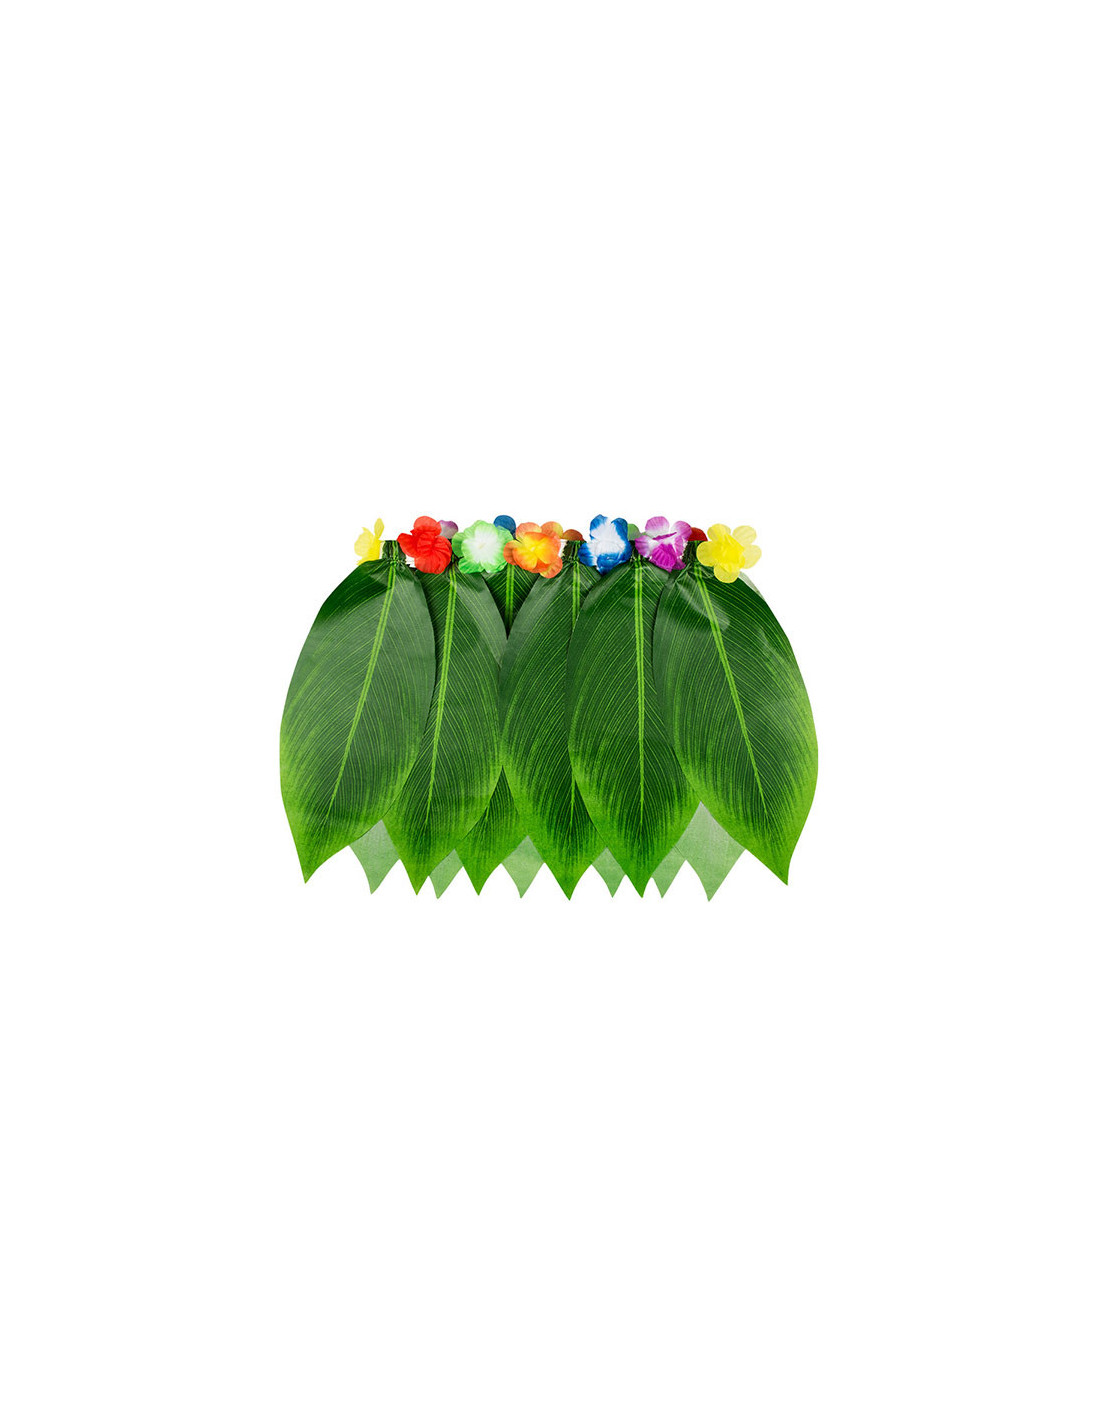 Falda hawaiana con hojas verdes por 4,25 €